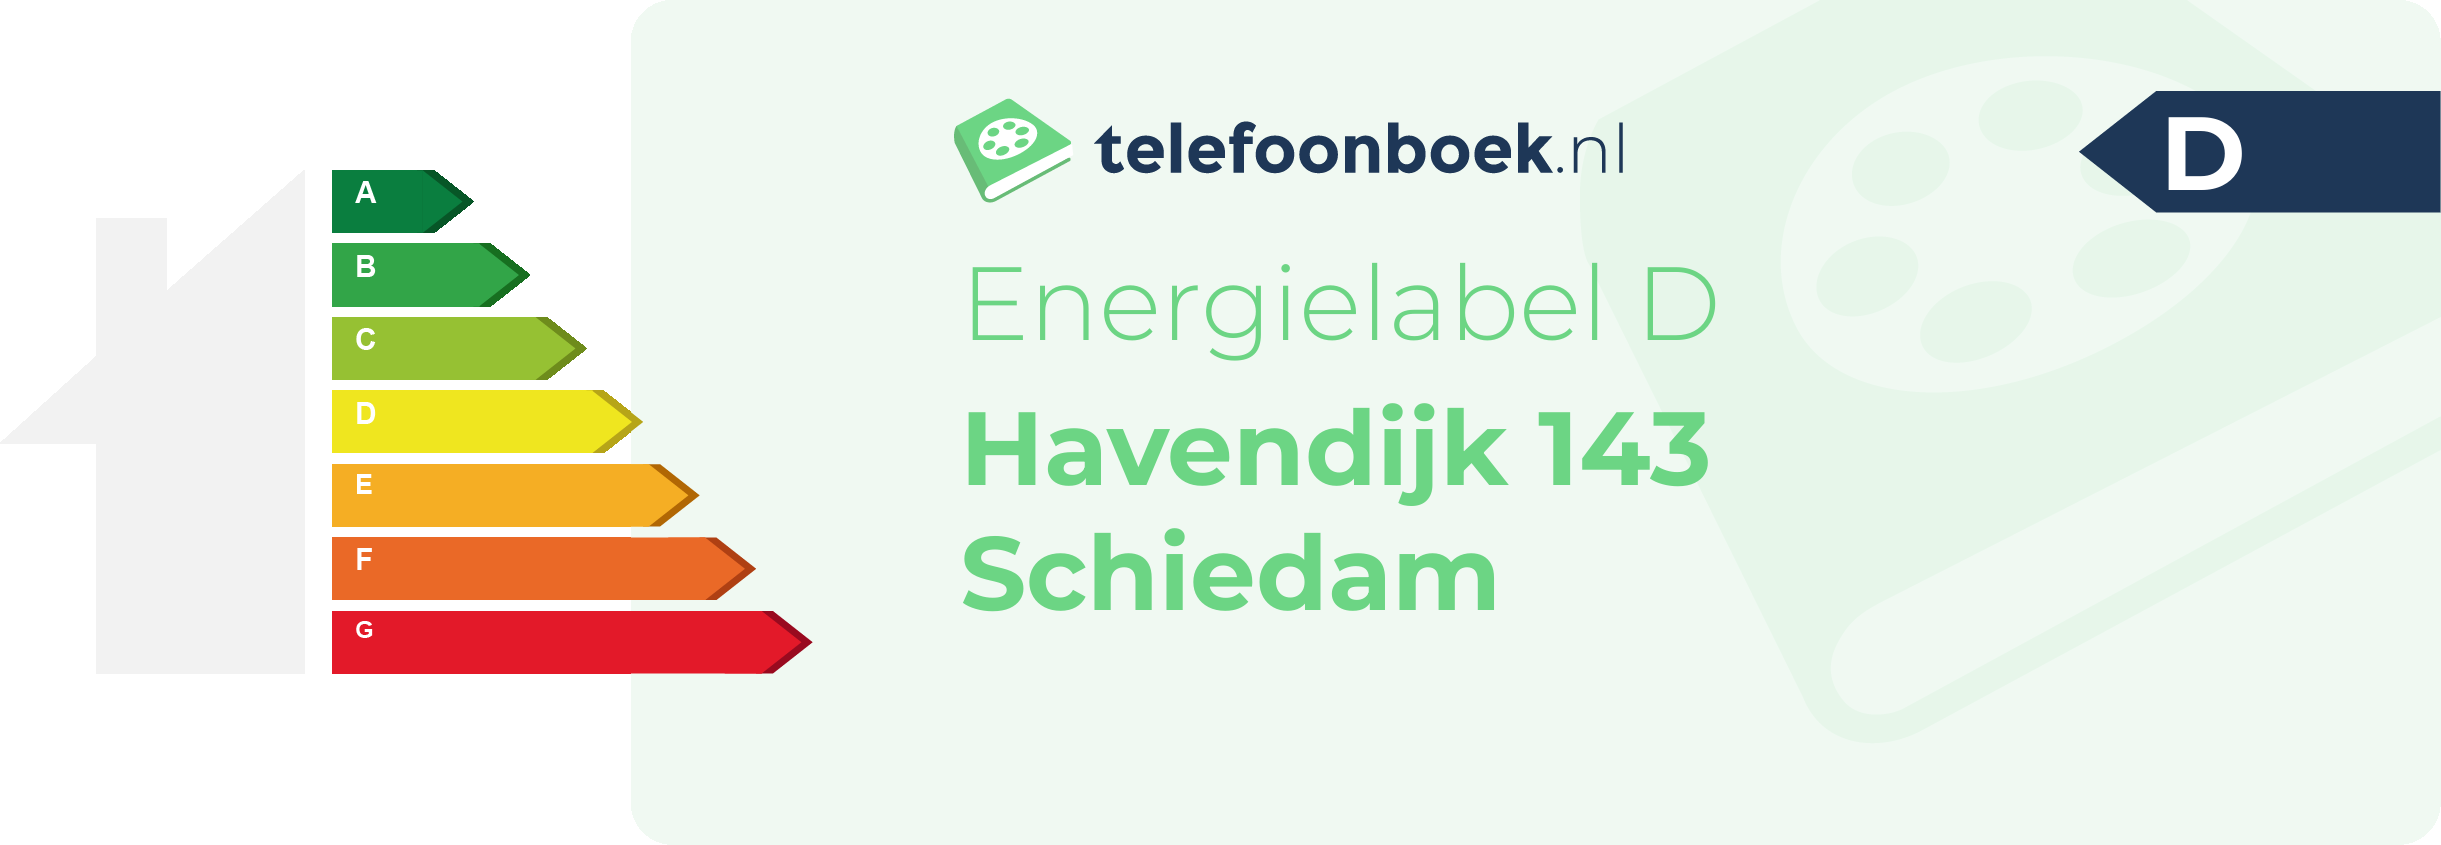 Energielabel Havendijk 143 Schiedam